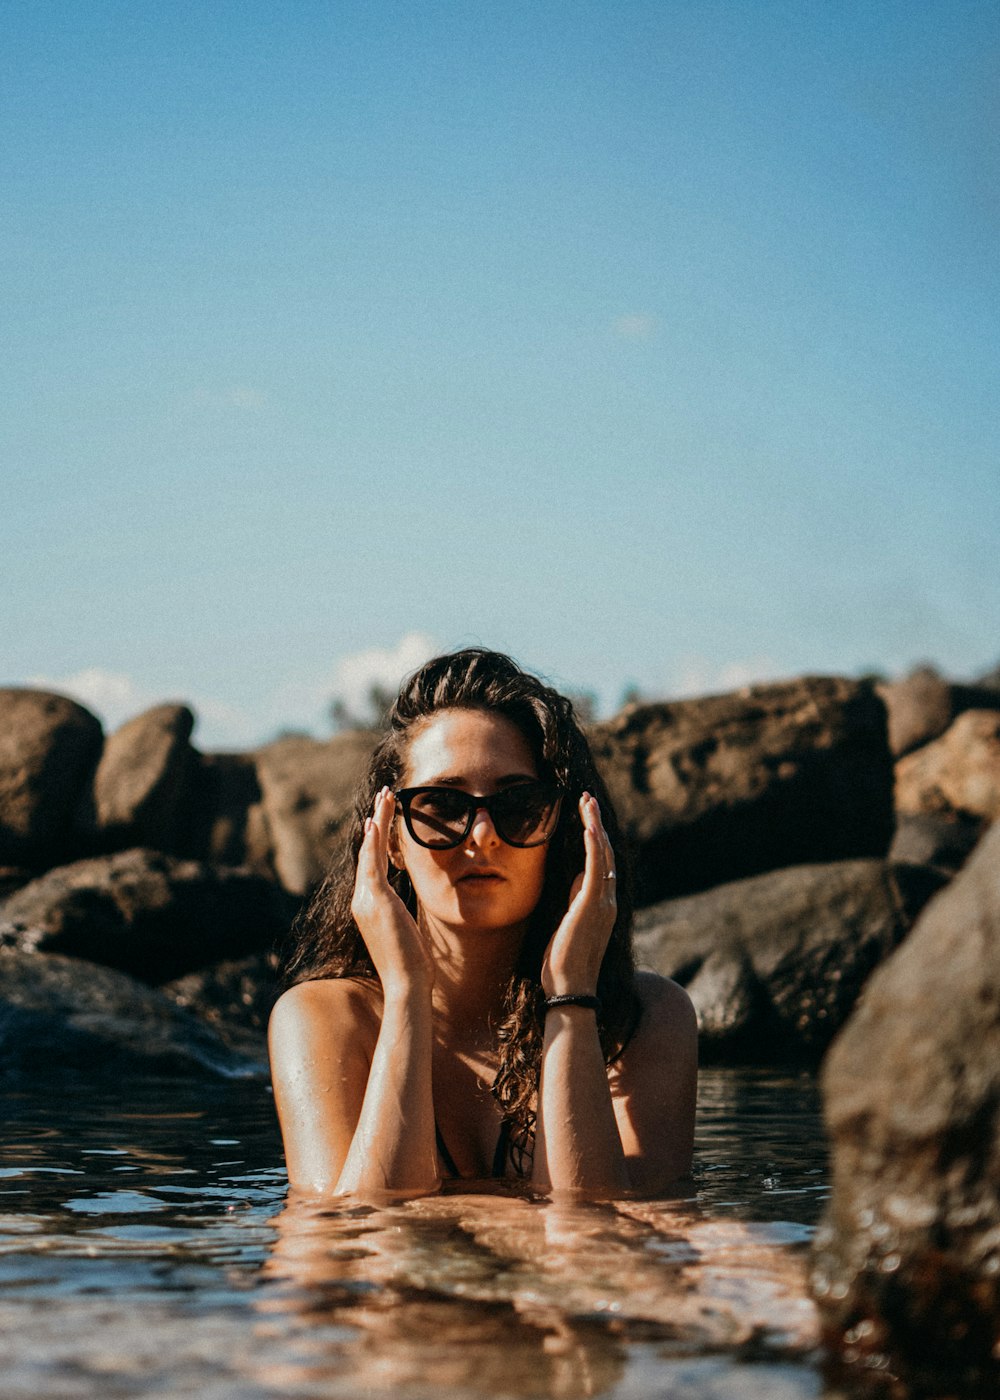 검은 선글라스를 낀 여자가 낮에 수역 근처의 바위에 앉아 있습니다.